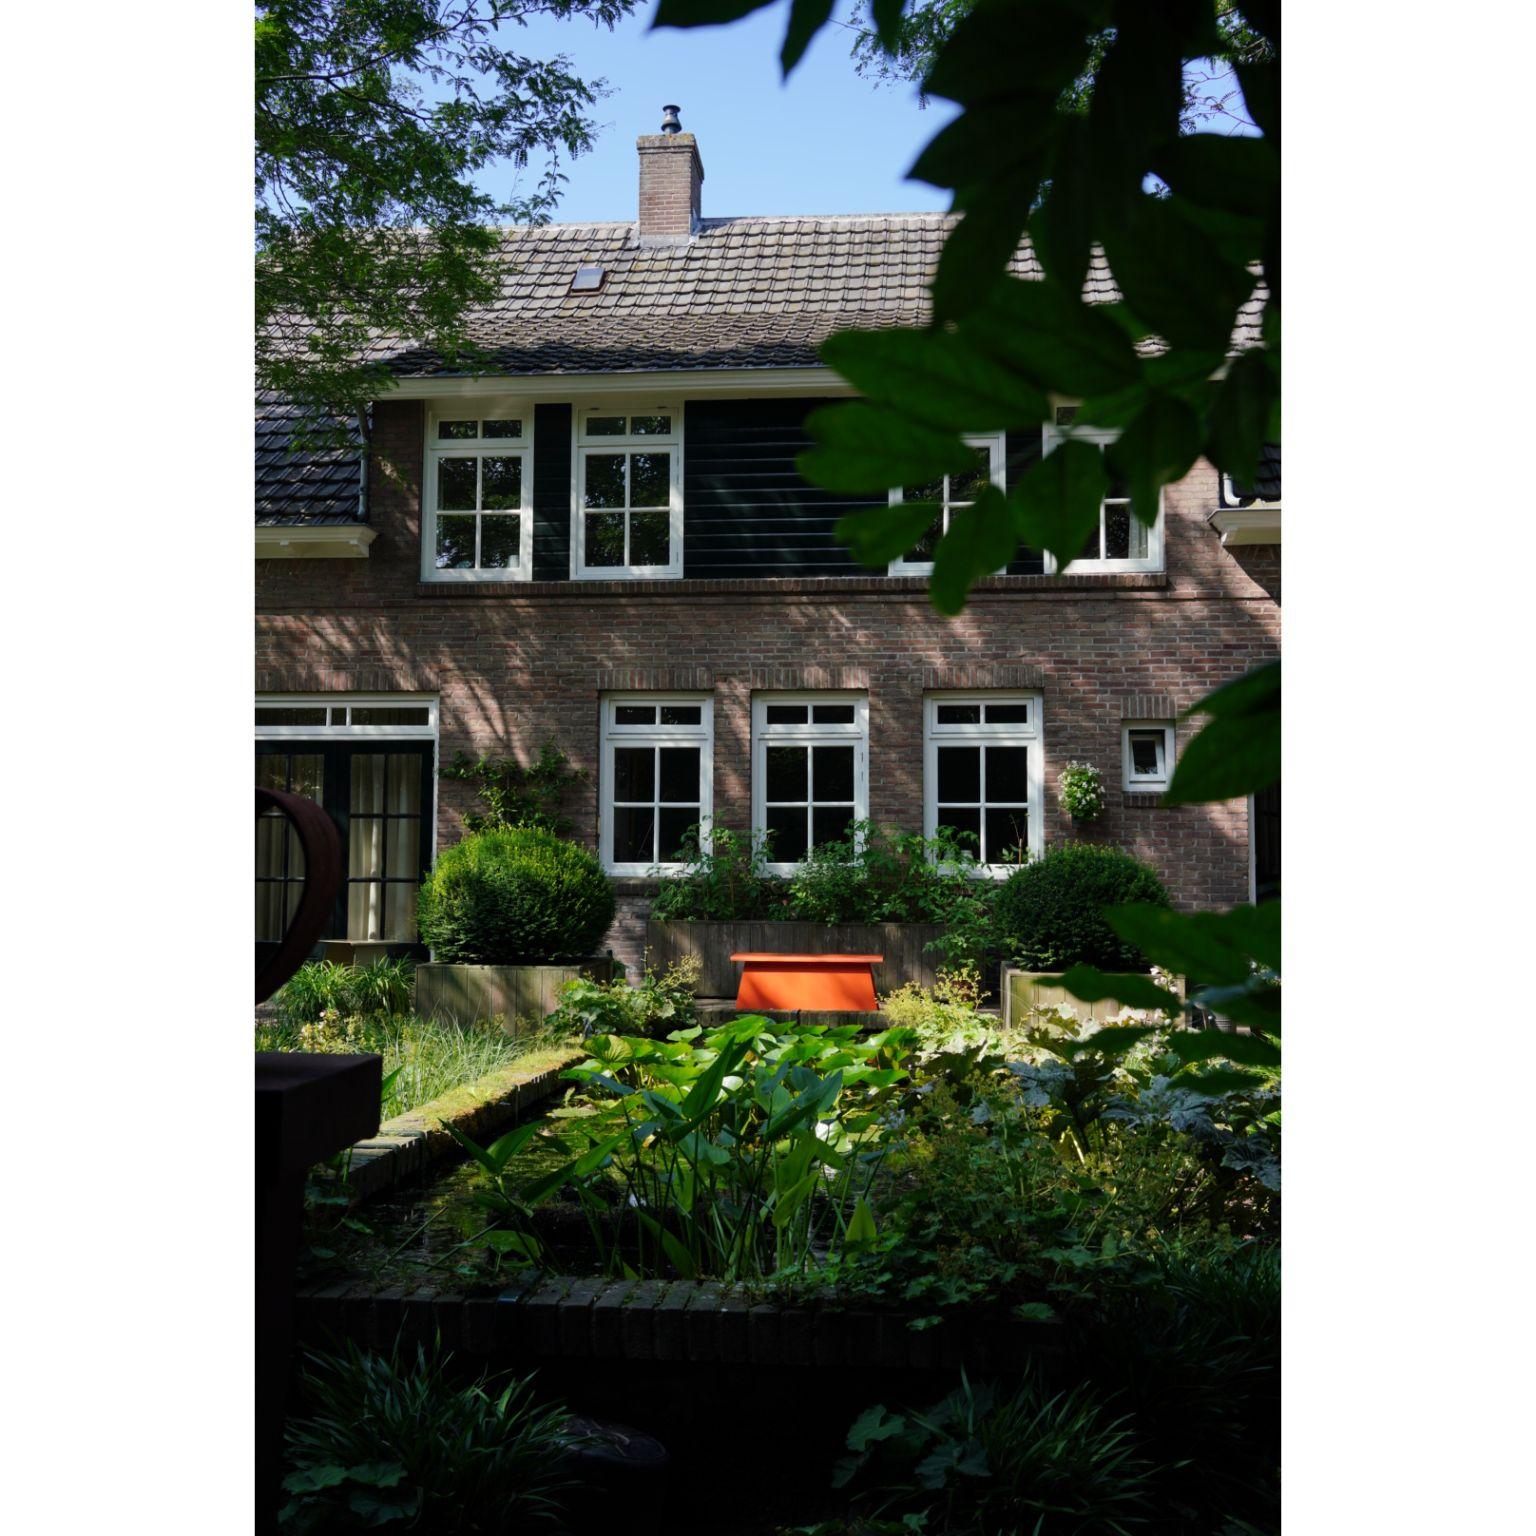 The Old School 100 Orange Bench by Harm De Veer 7